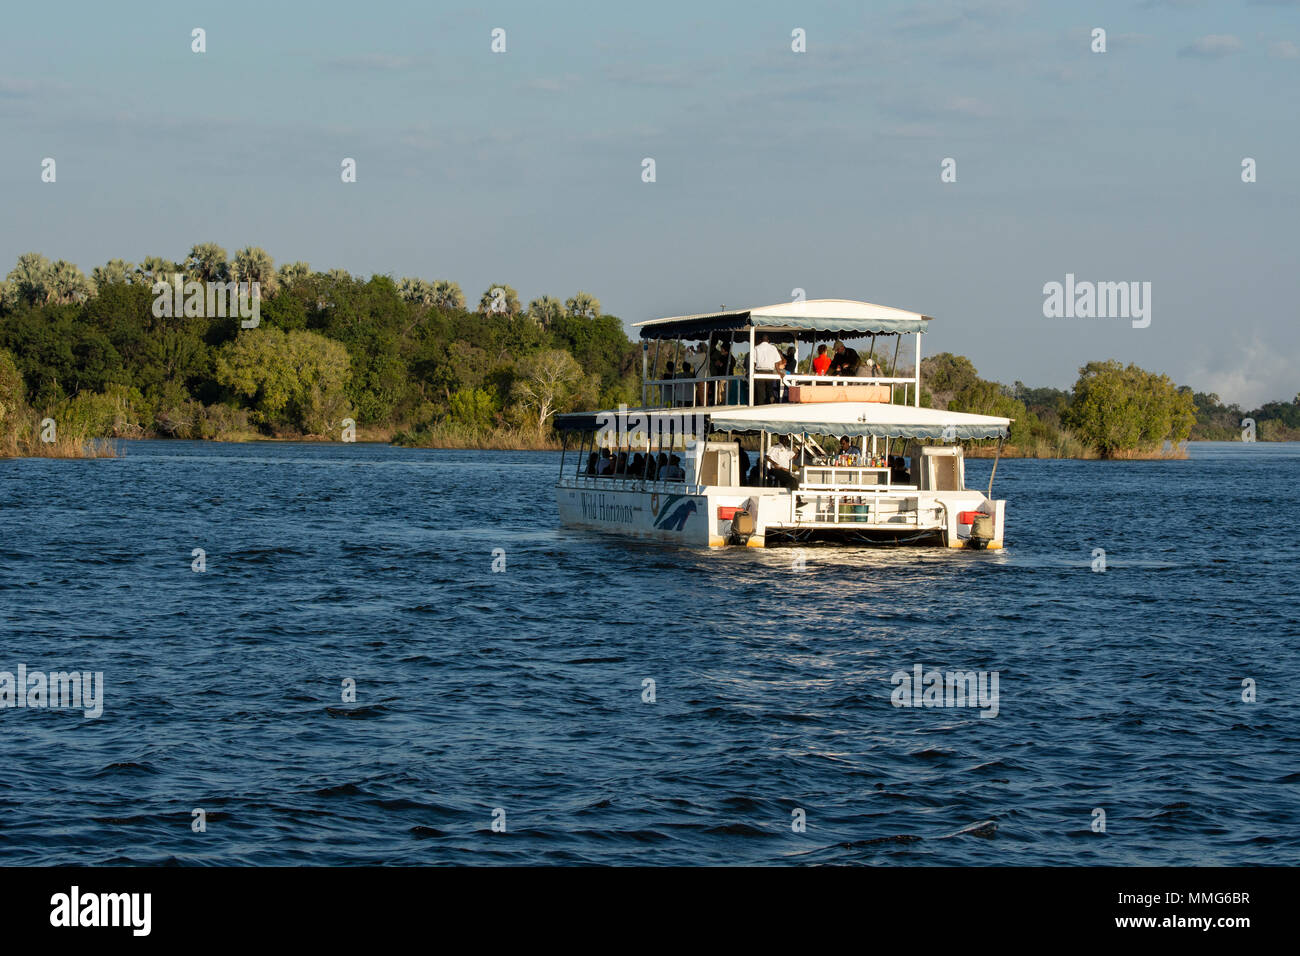 Africa, Zimbabwe, Zambezi River, near Victoria Falls. Sightseeing cruise boat, Wild Horizons, on the Zambezi River. Stock Photo